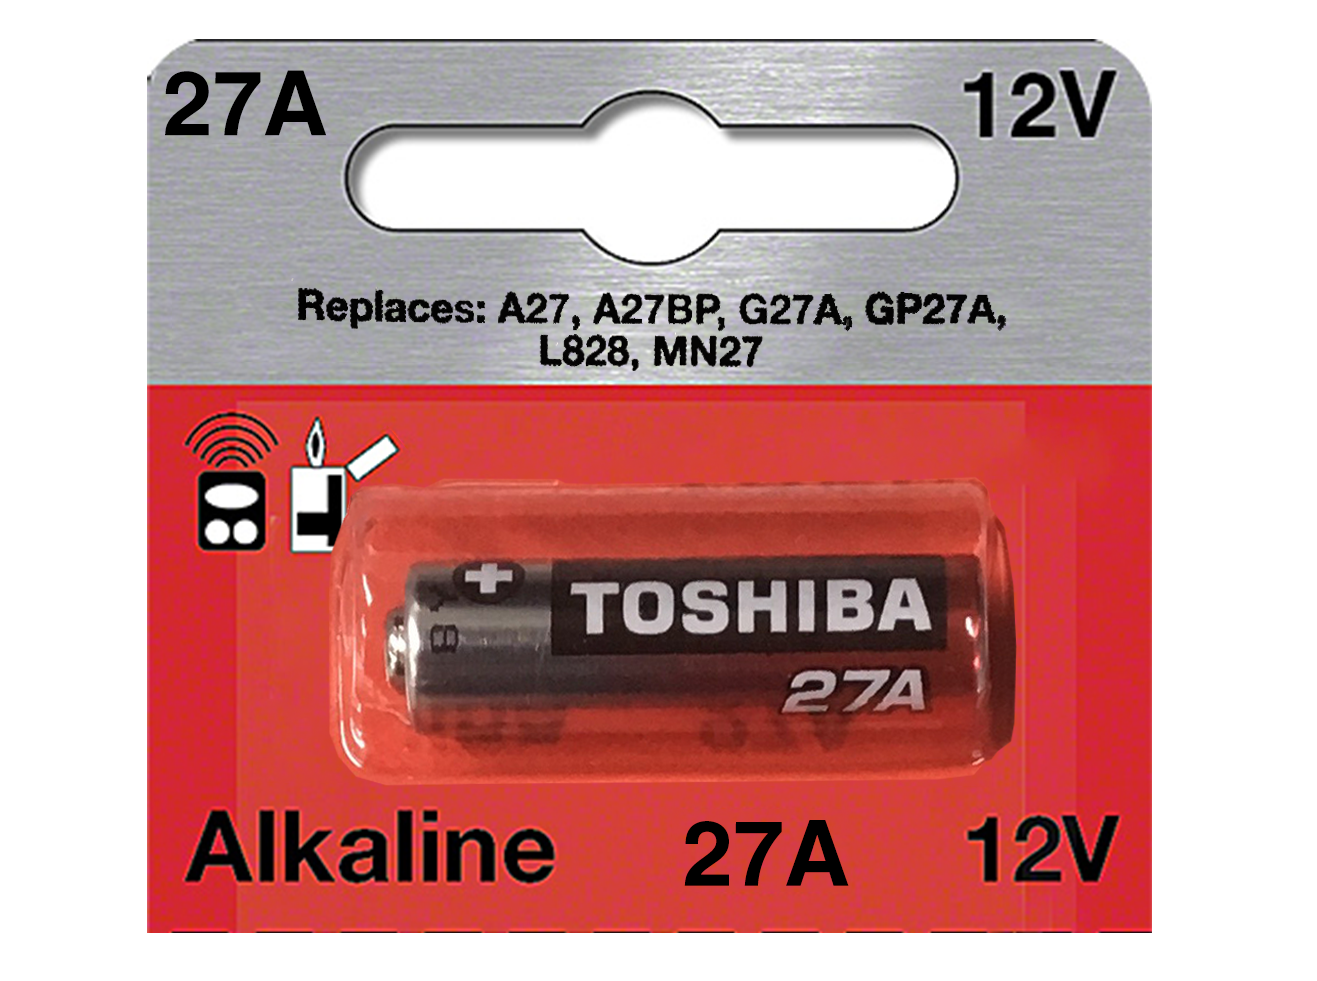 Pile Alcaline : LR27A 27A A27 MN27 GP27A 12V ( dispo aussi : LR23A, etc   )